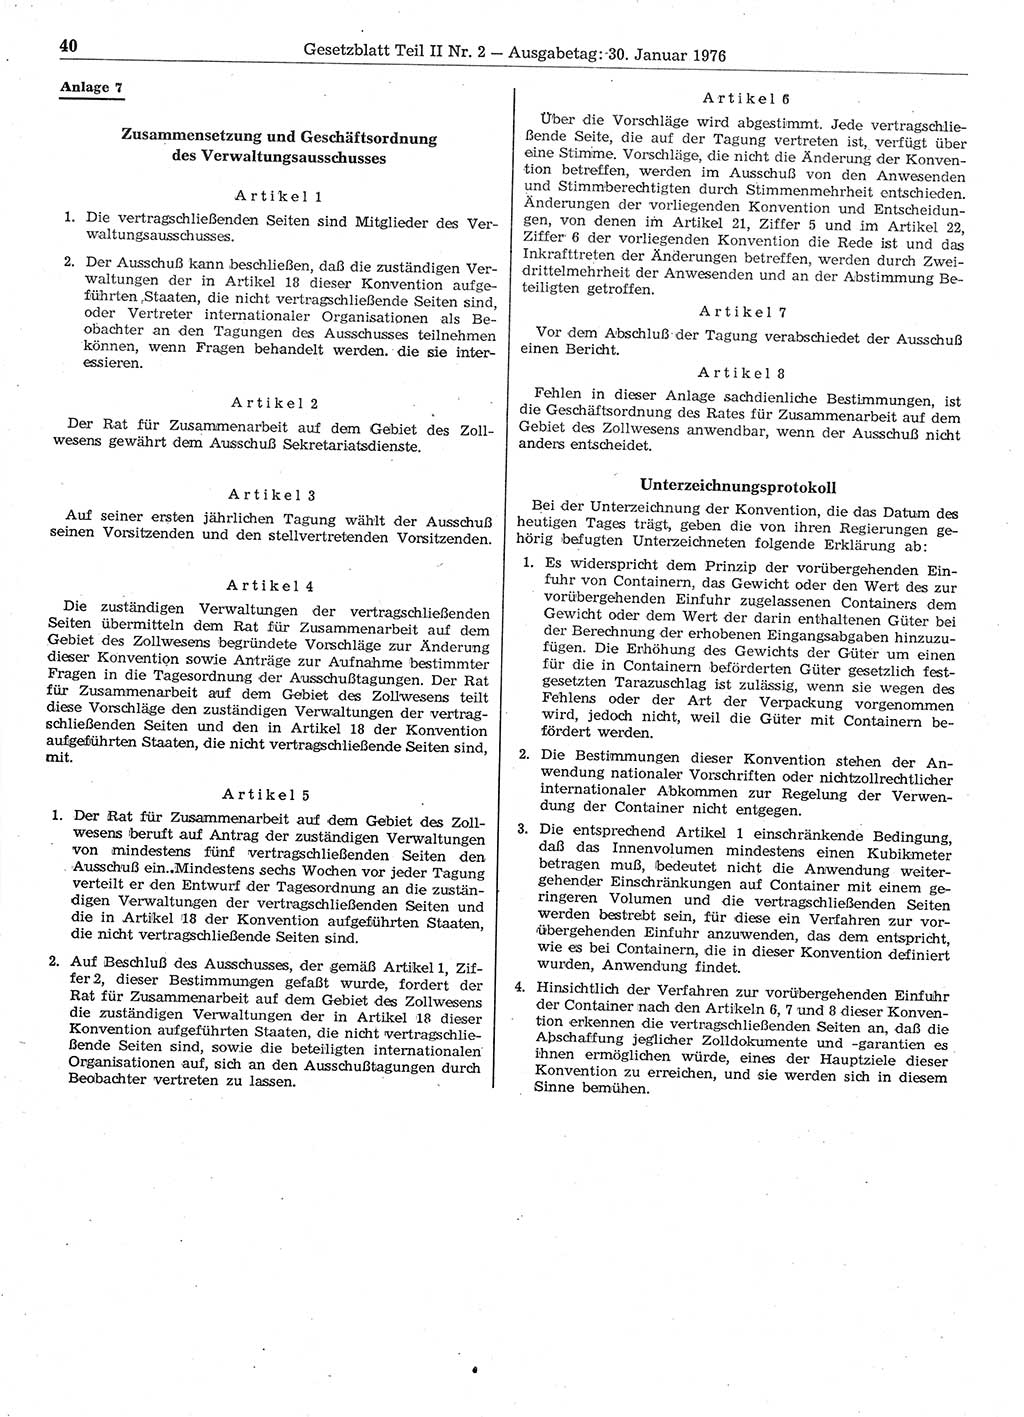 Gesetzblatt (GBl.) der Deutschen Demokratischen Republik (DDR) Teil ⅠⅠ 1976, Seite 40 (GBl. DDR ⅠⅠ 1976, S. 40)